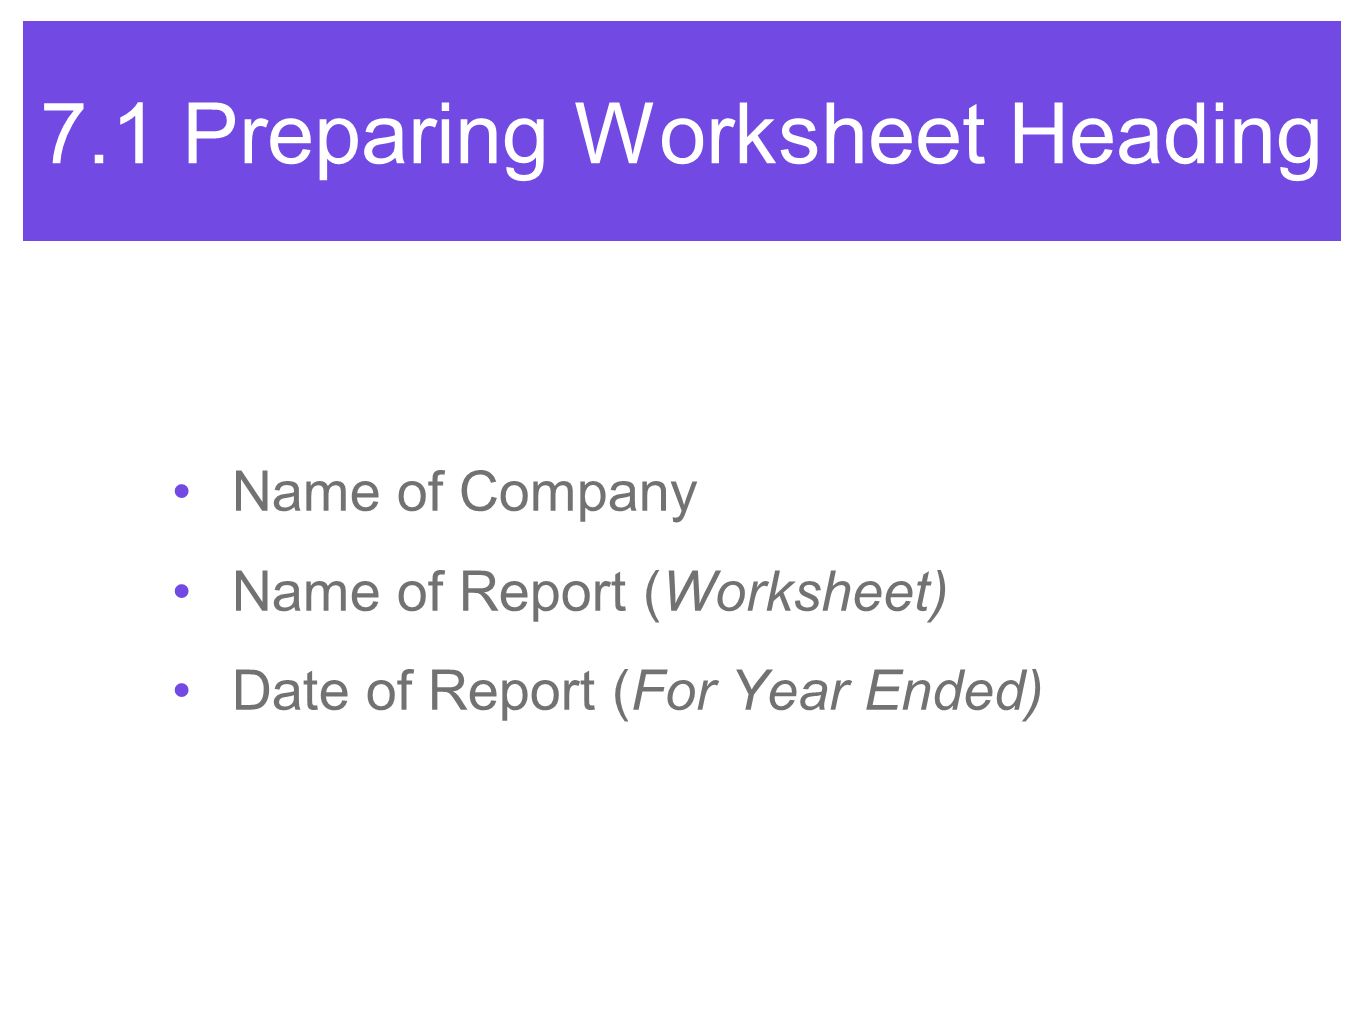 7.1 Preparing Worksheet Heading